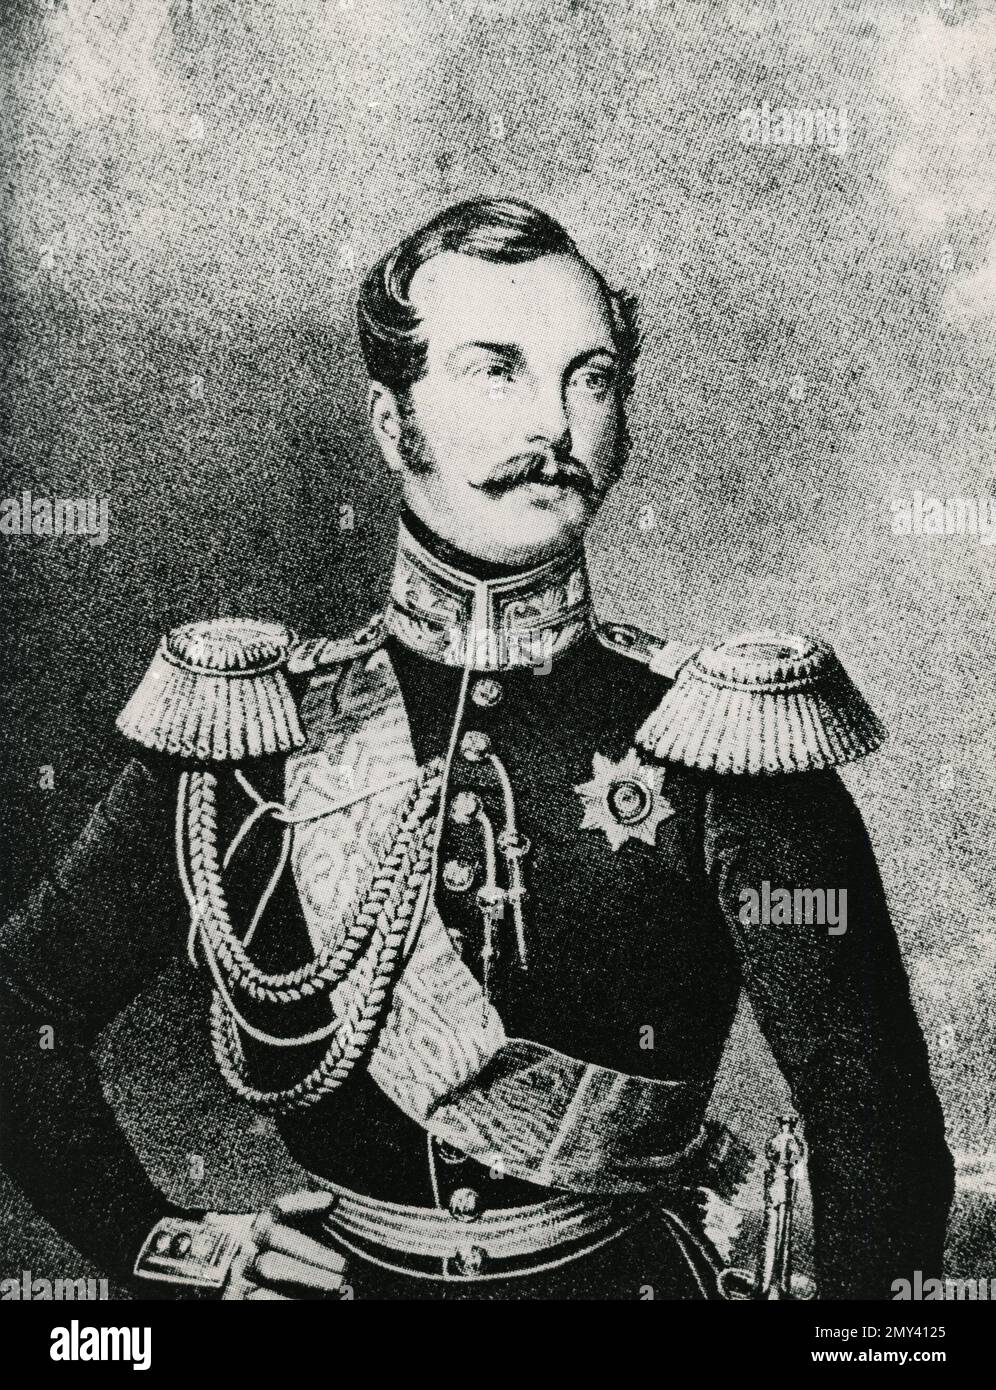 Portrait of Alexander II, Emperor of Russia, 1860s Stock Photo